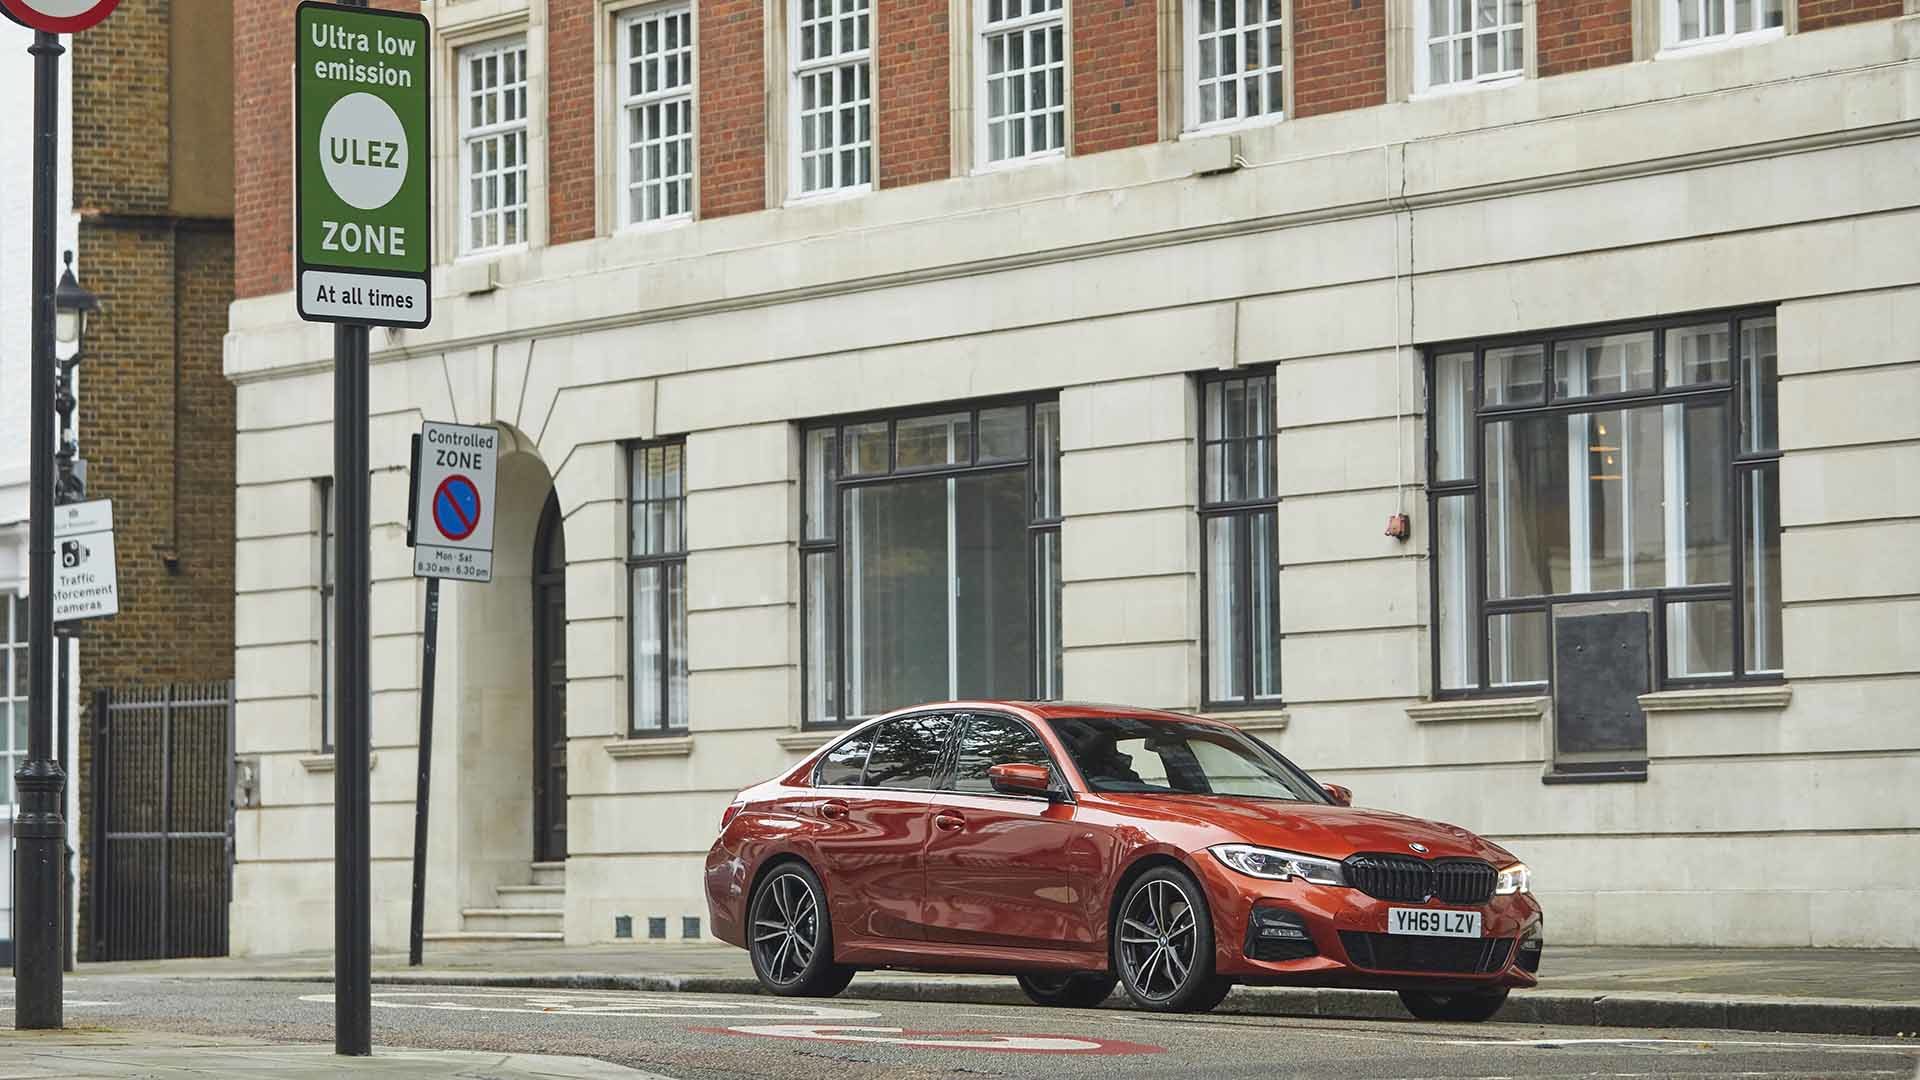 New BMW eDrive Zones